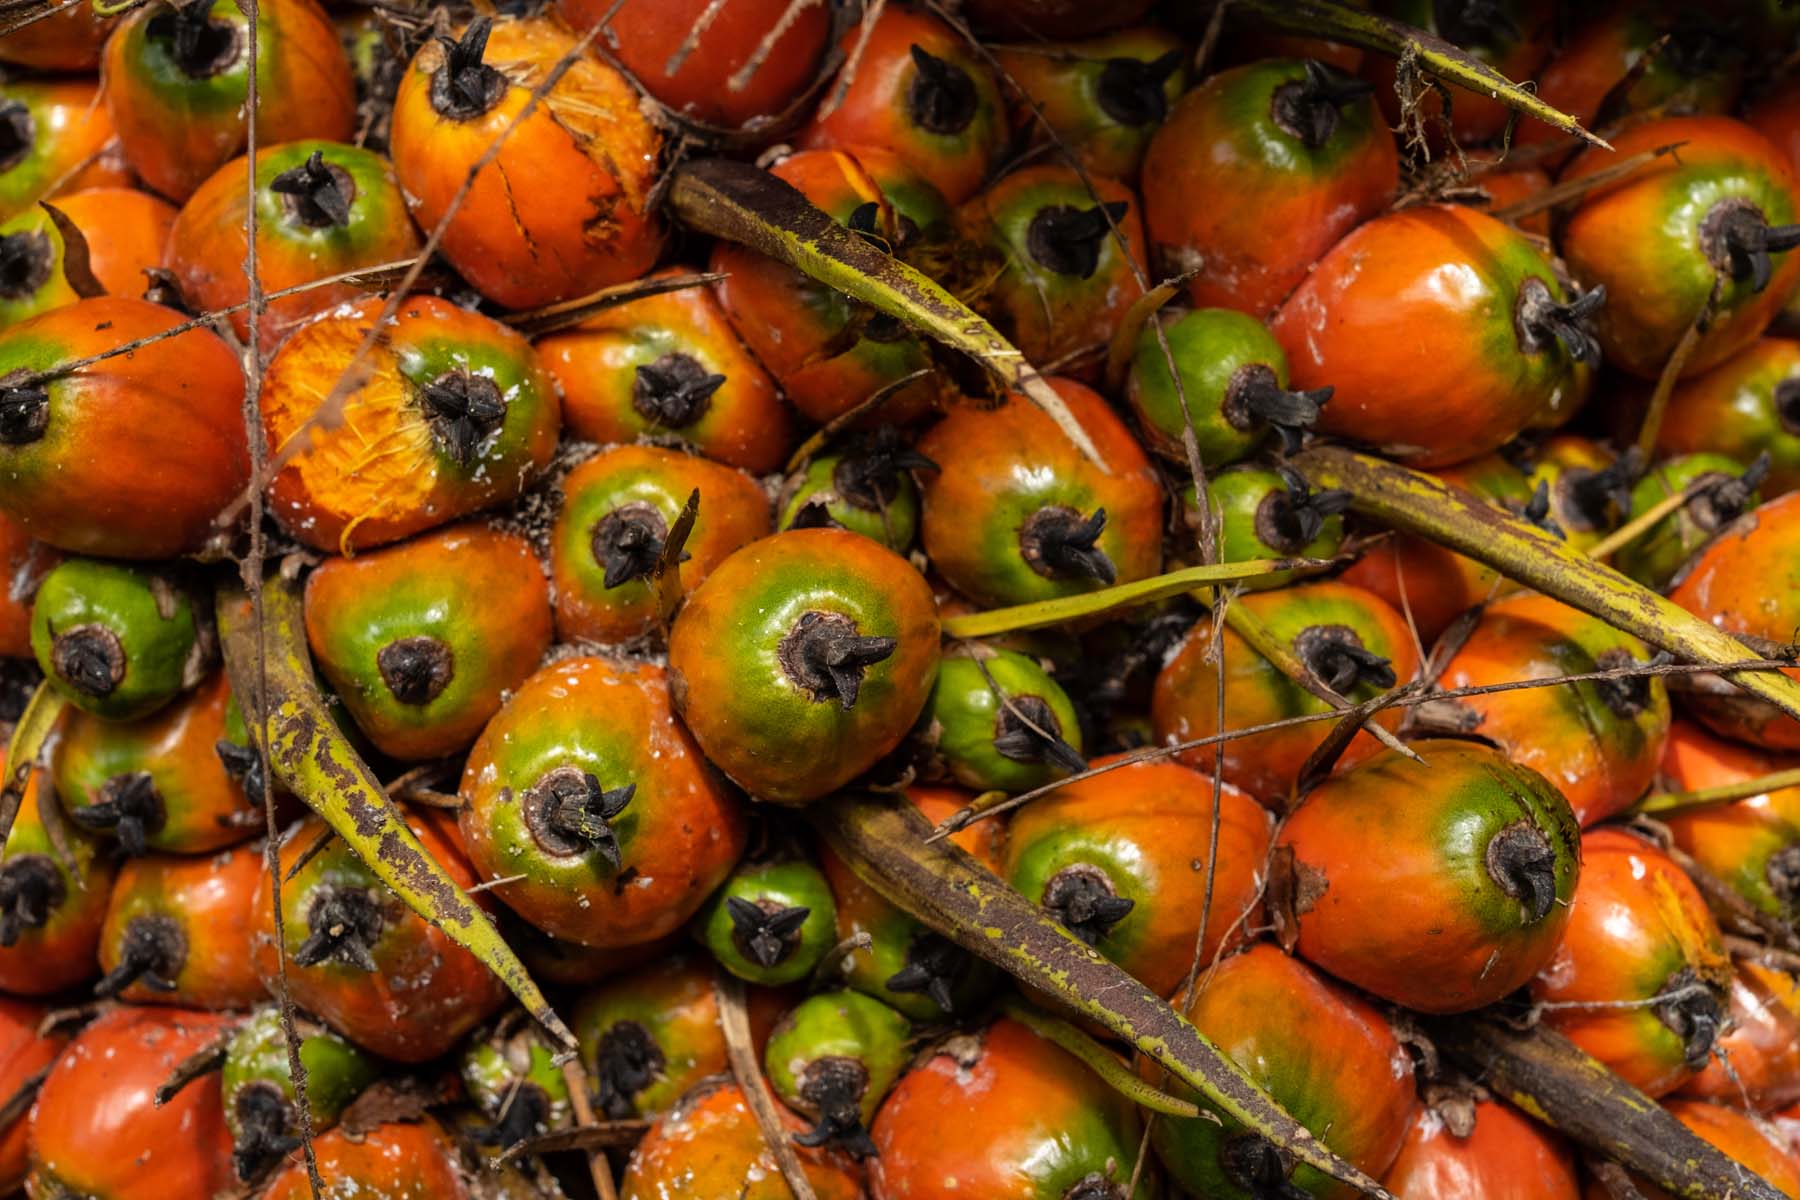 Palma de aceite: las plantaciones que acorralan selvas y manglares en el sureste de México - Palma-de-aceite-62